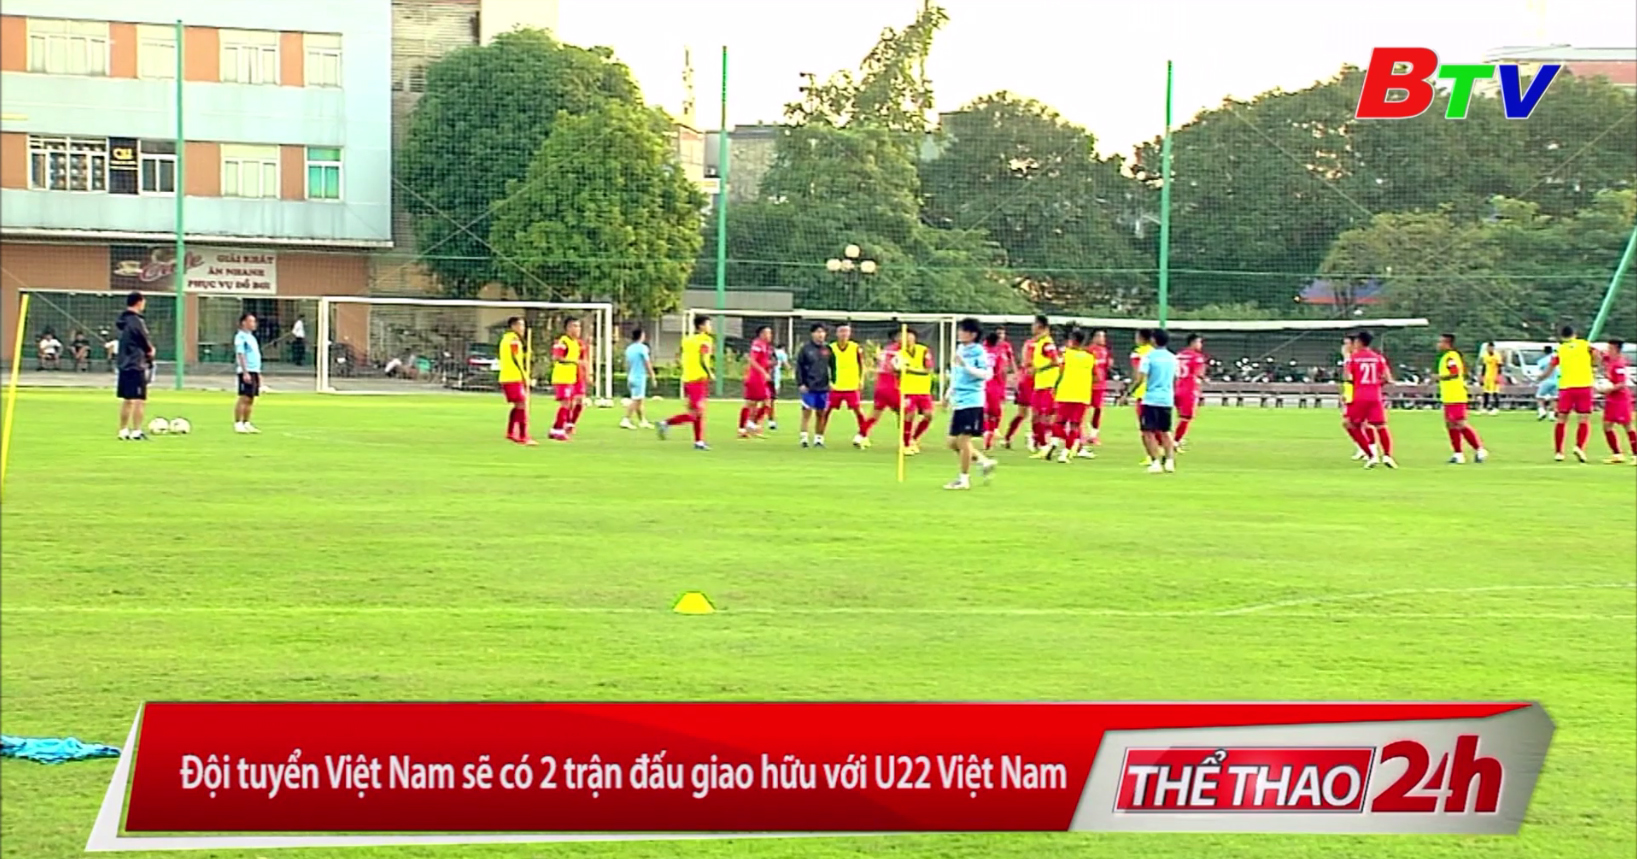 Đội tuyển Việt Nam sẽ có 2 trận đấu giao hữu với U22 Việt Nam